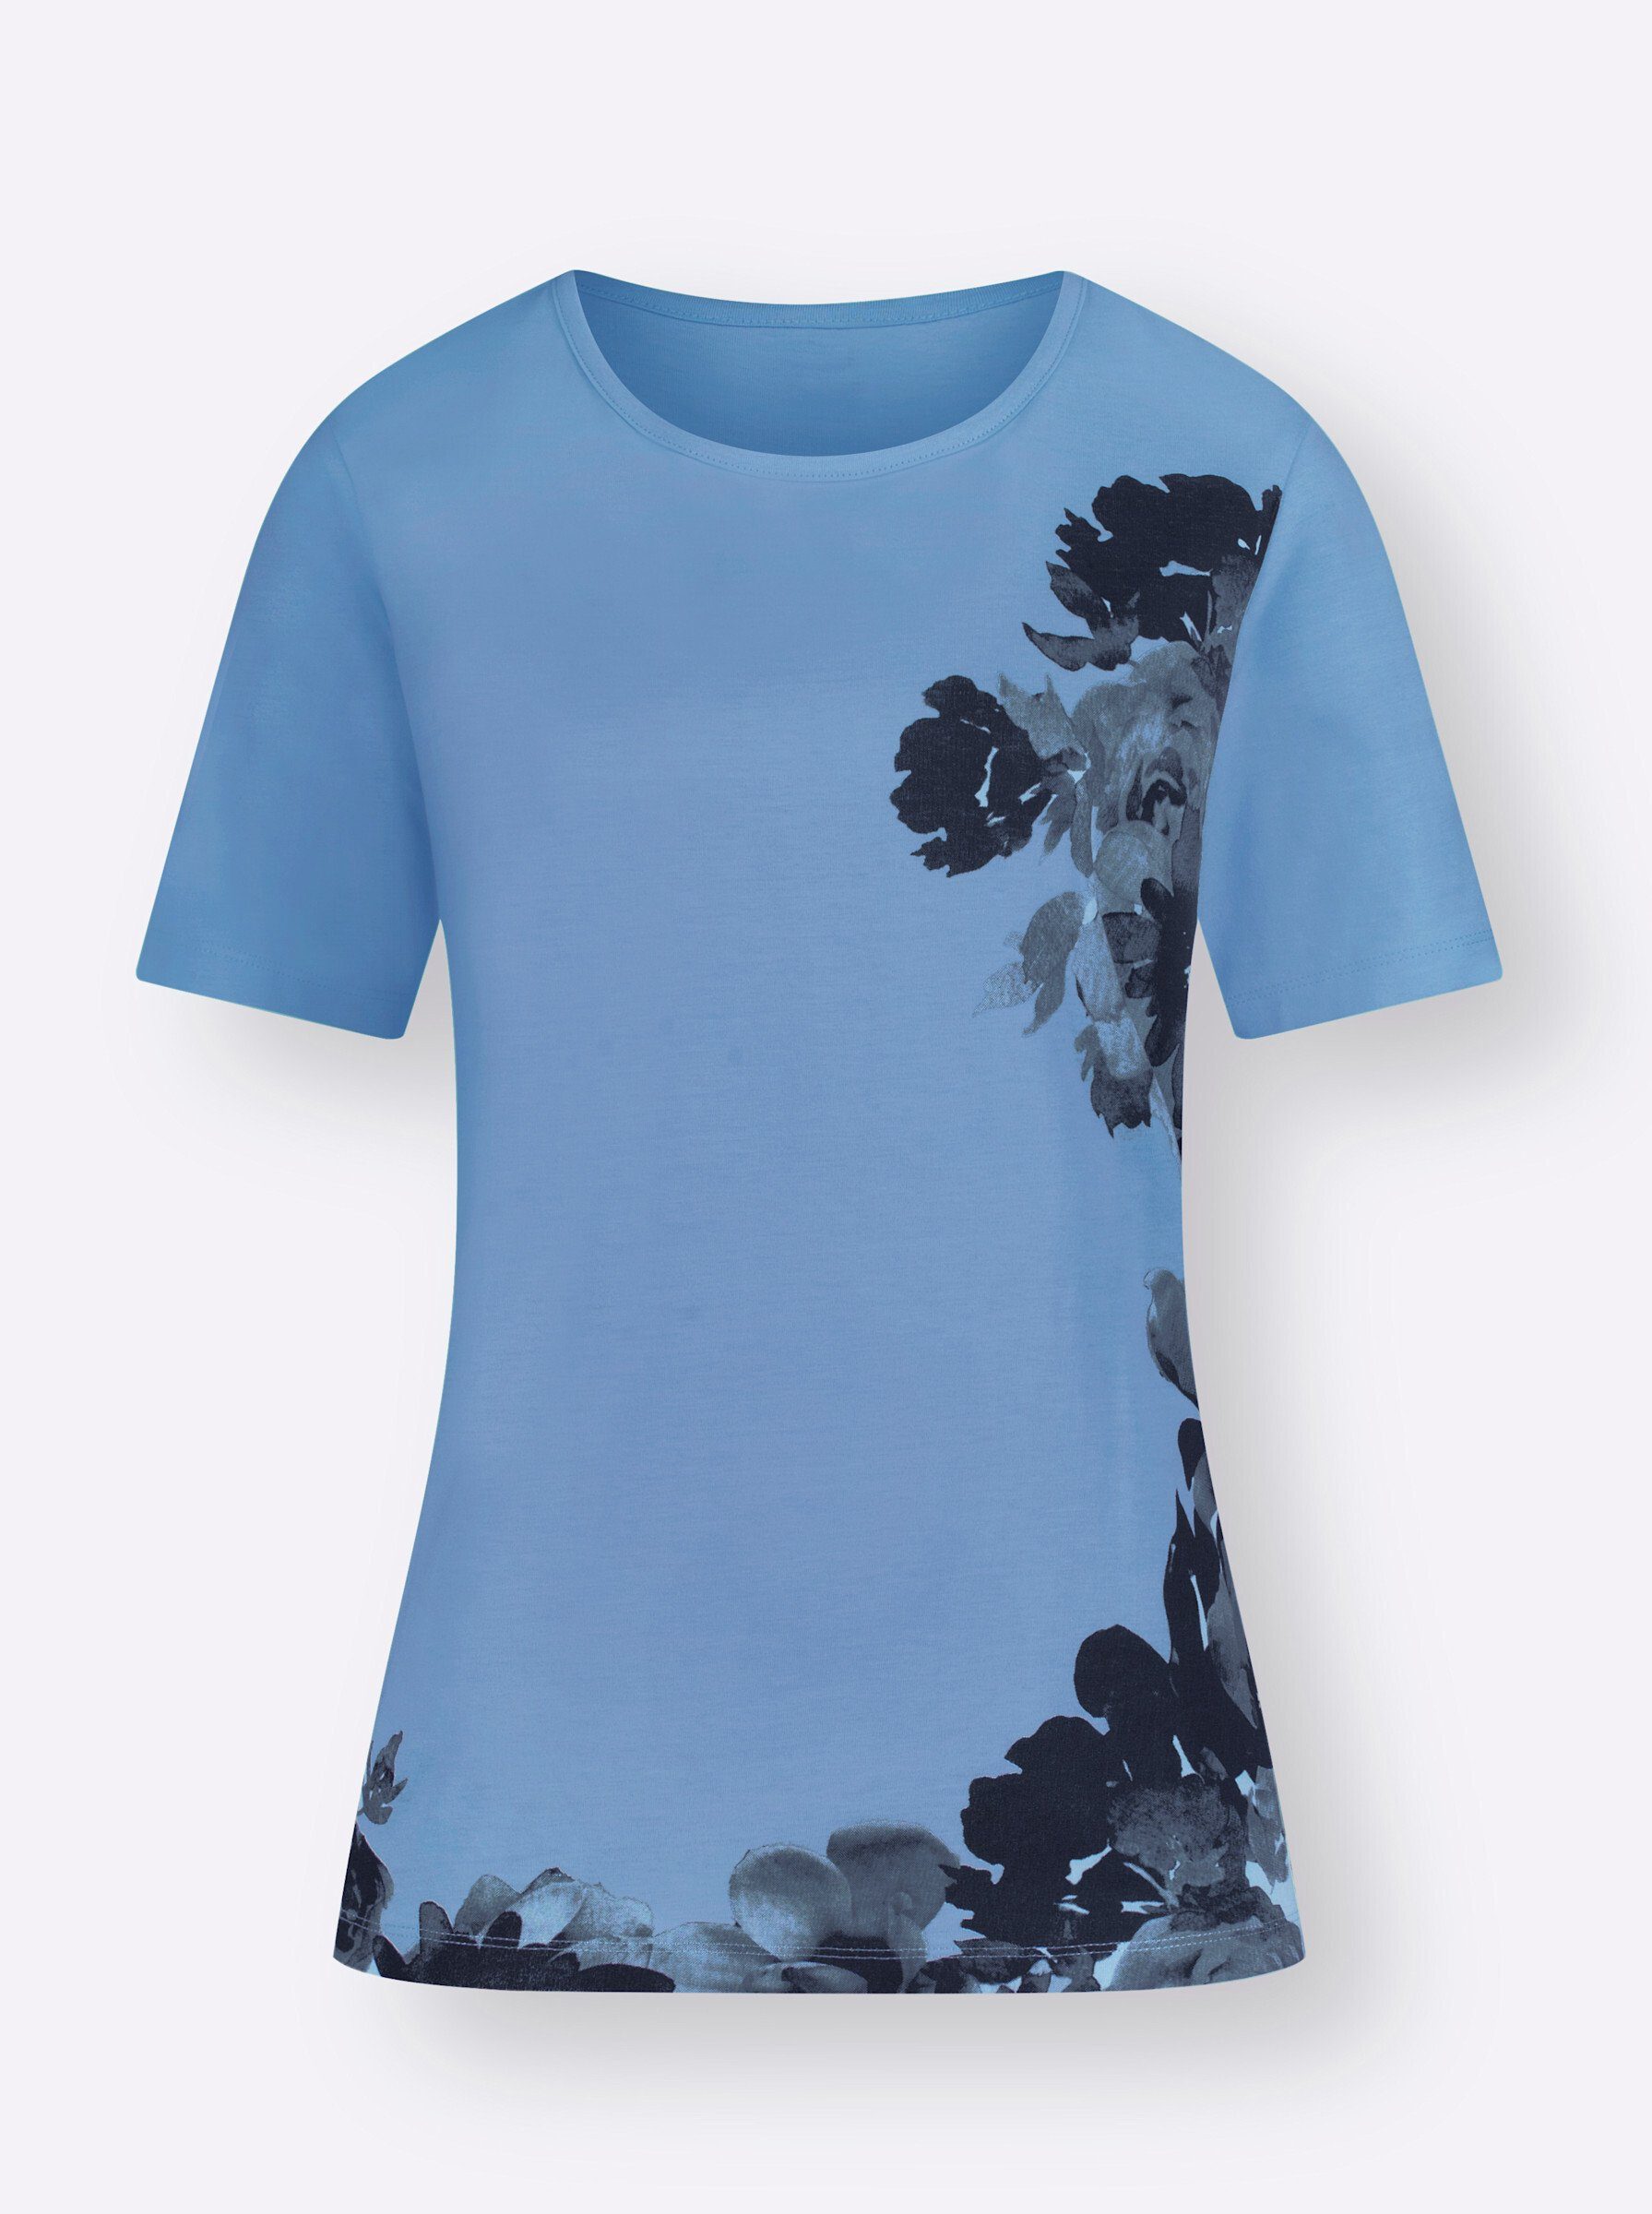 an! T-Shirt himmelblau-bedruckt Sieh